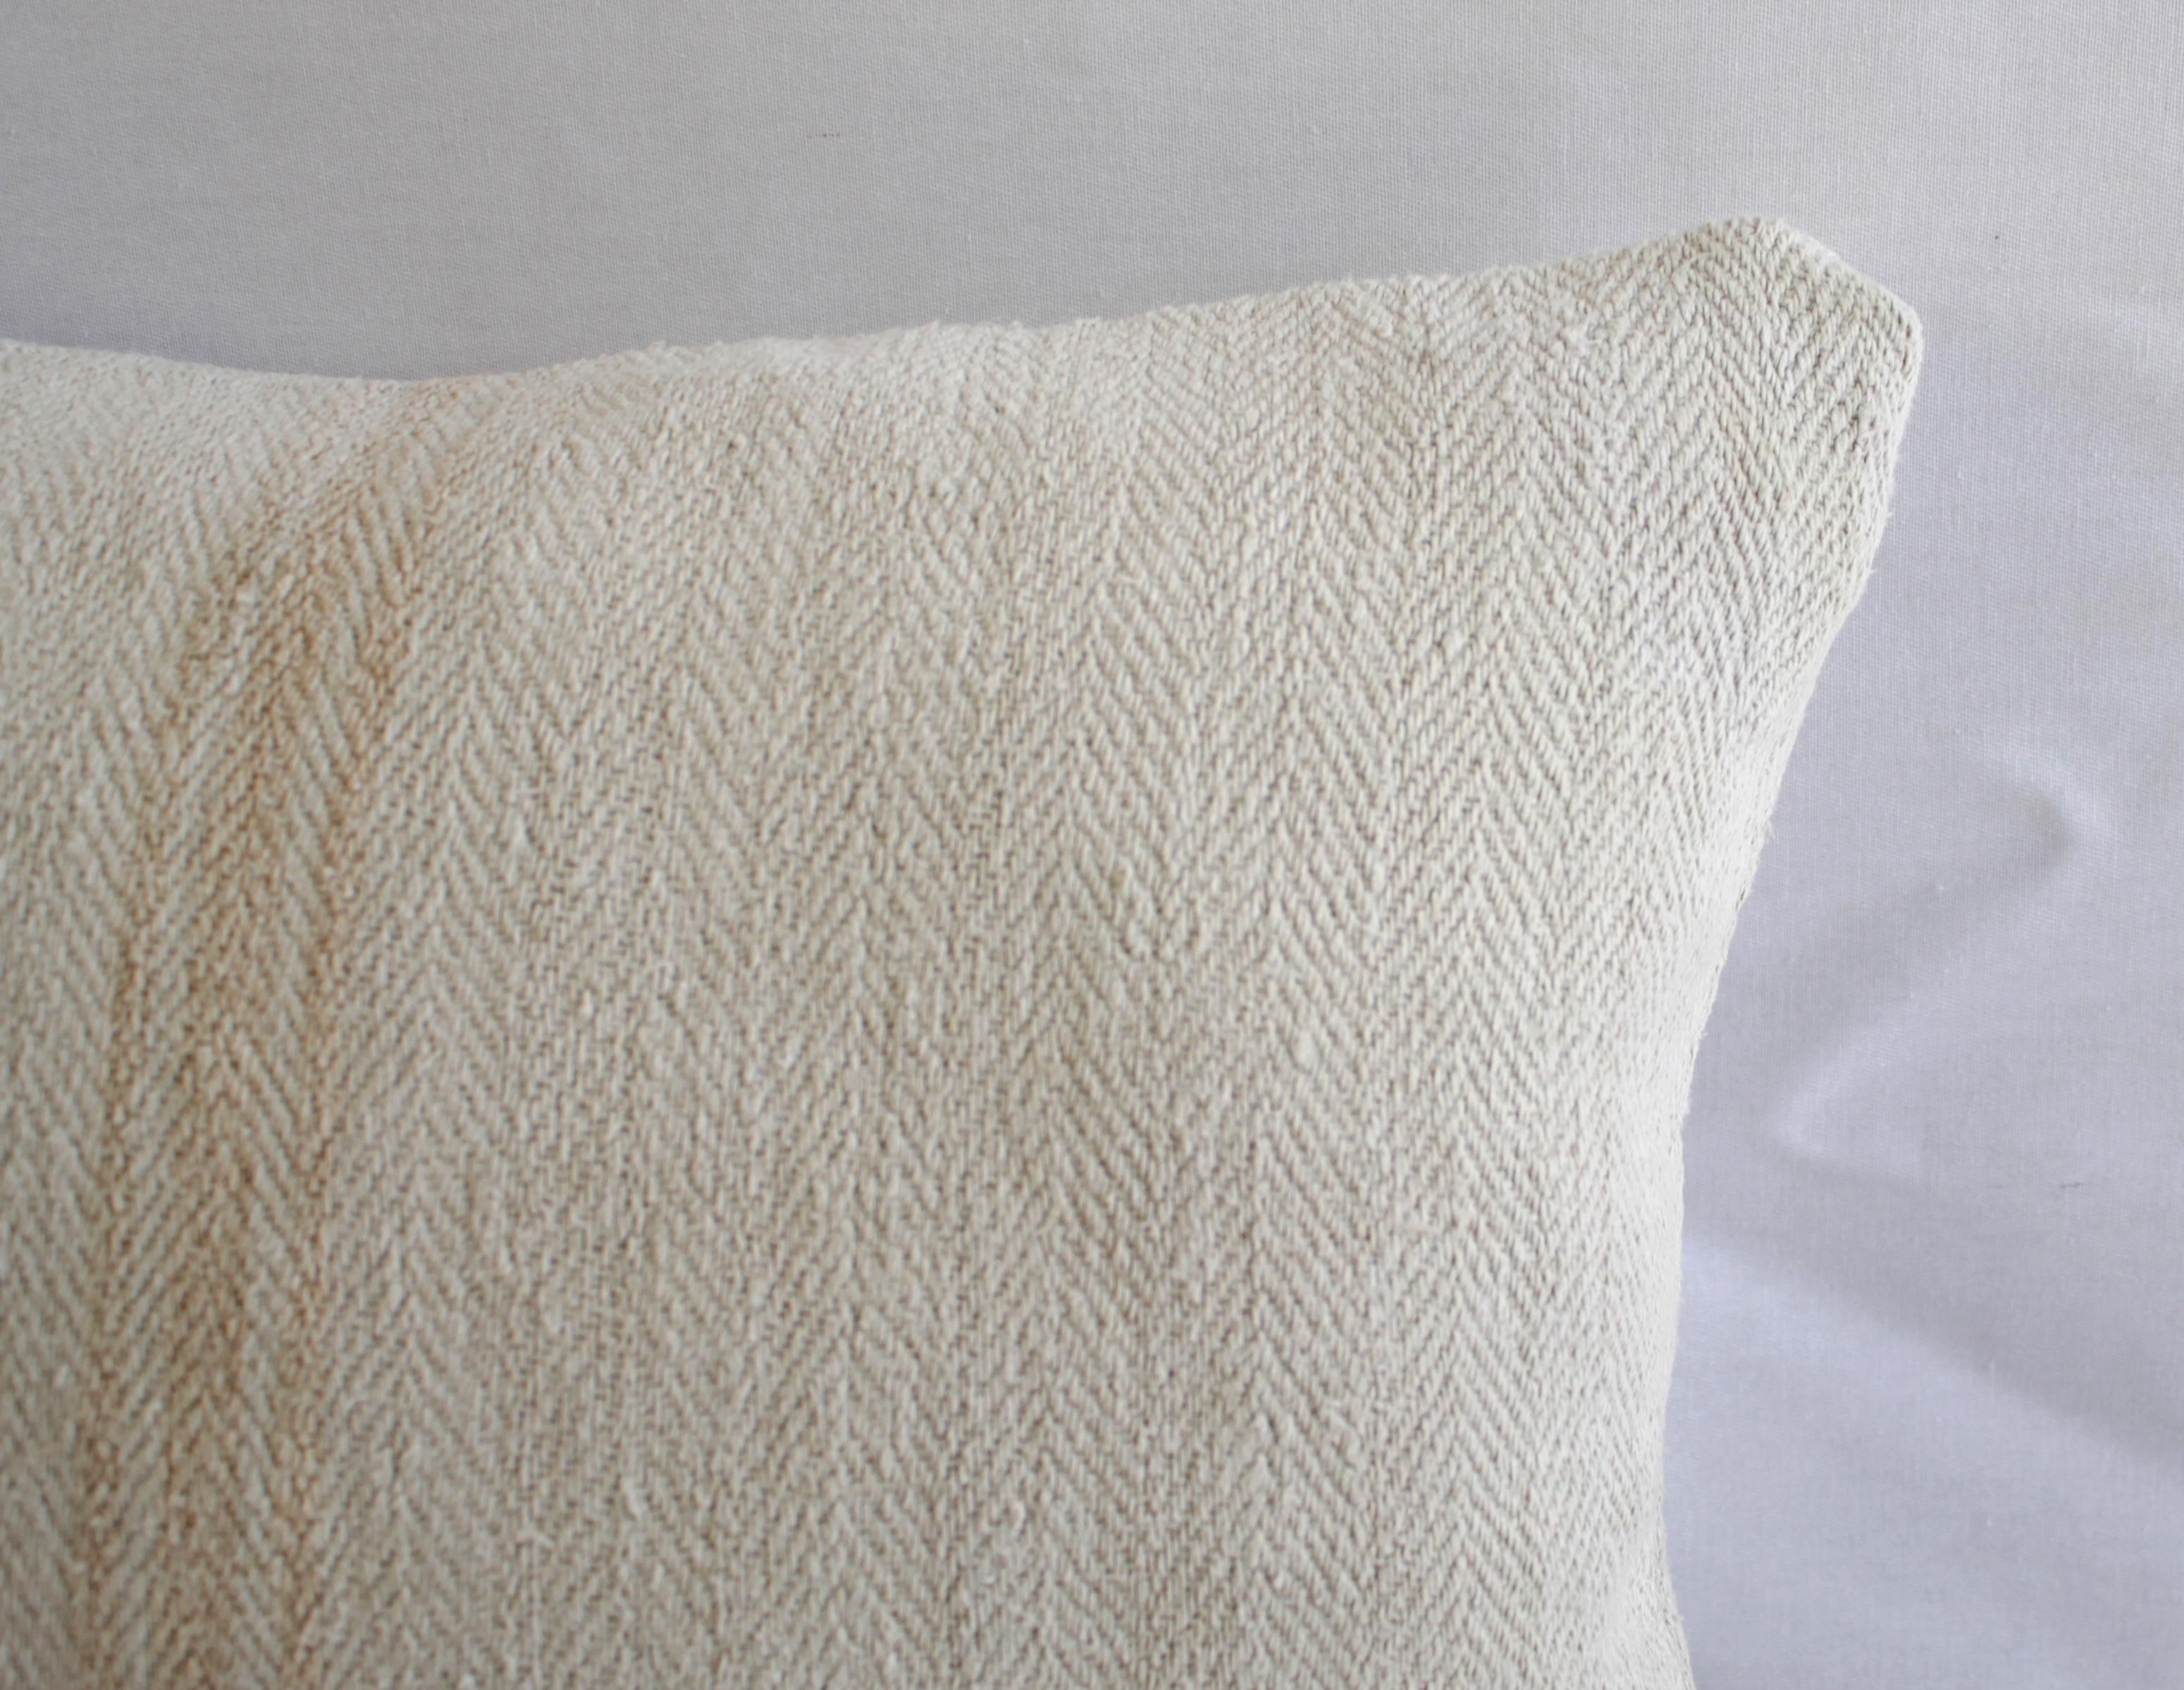 Antique Nubby 19th Century European Orange Stripe Grain Sack Pillows 5